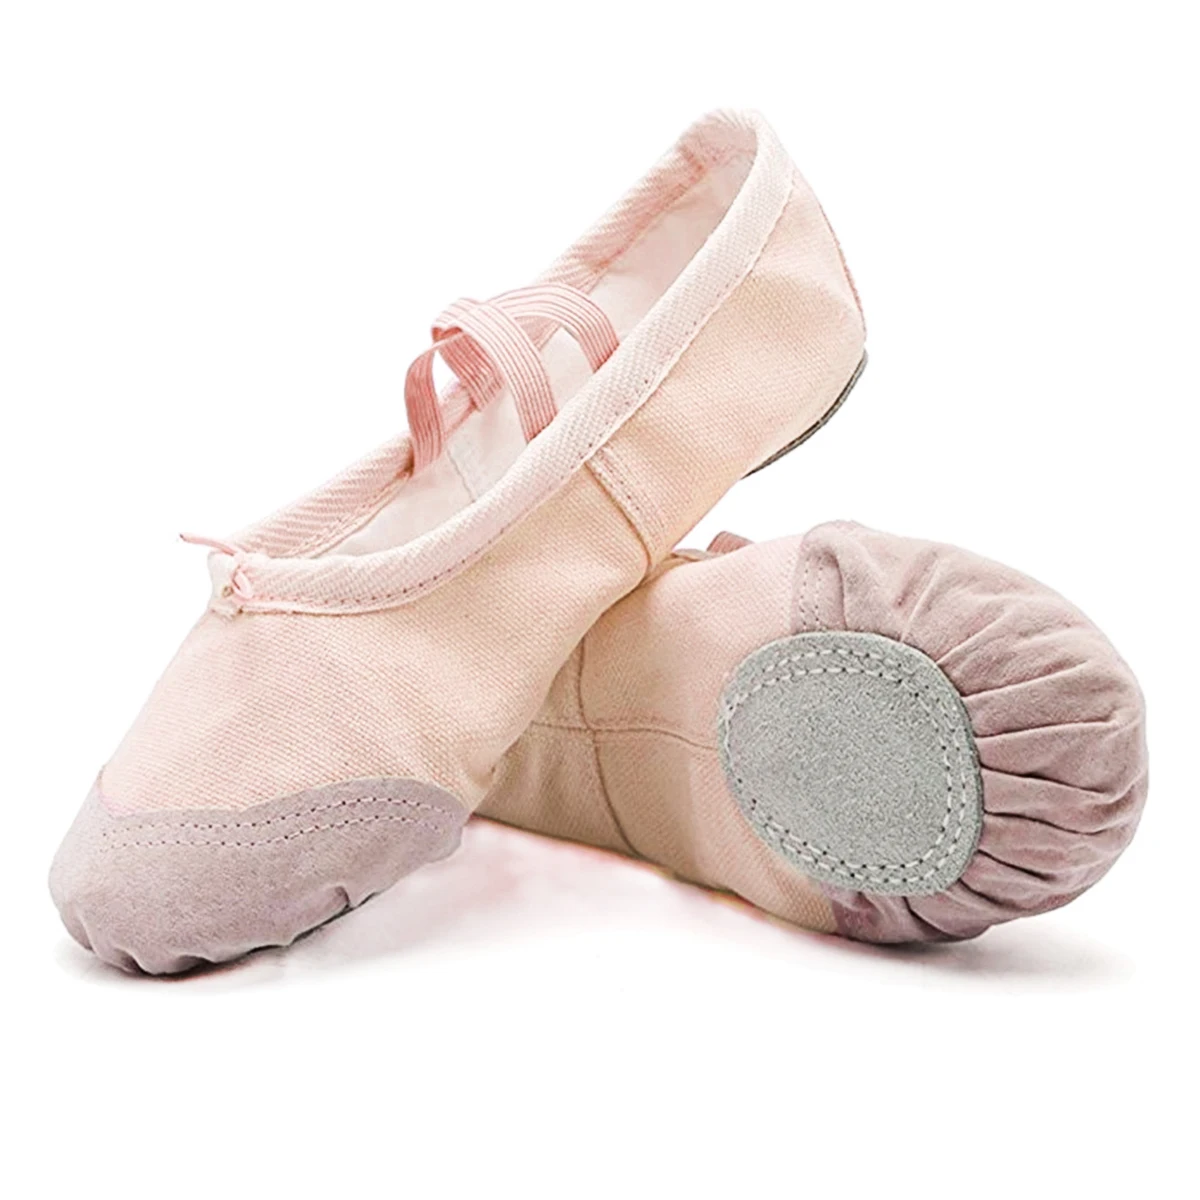 1 paire de Léger Danse Chaussures Ballet Chaussures Pour Enfants Filles 